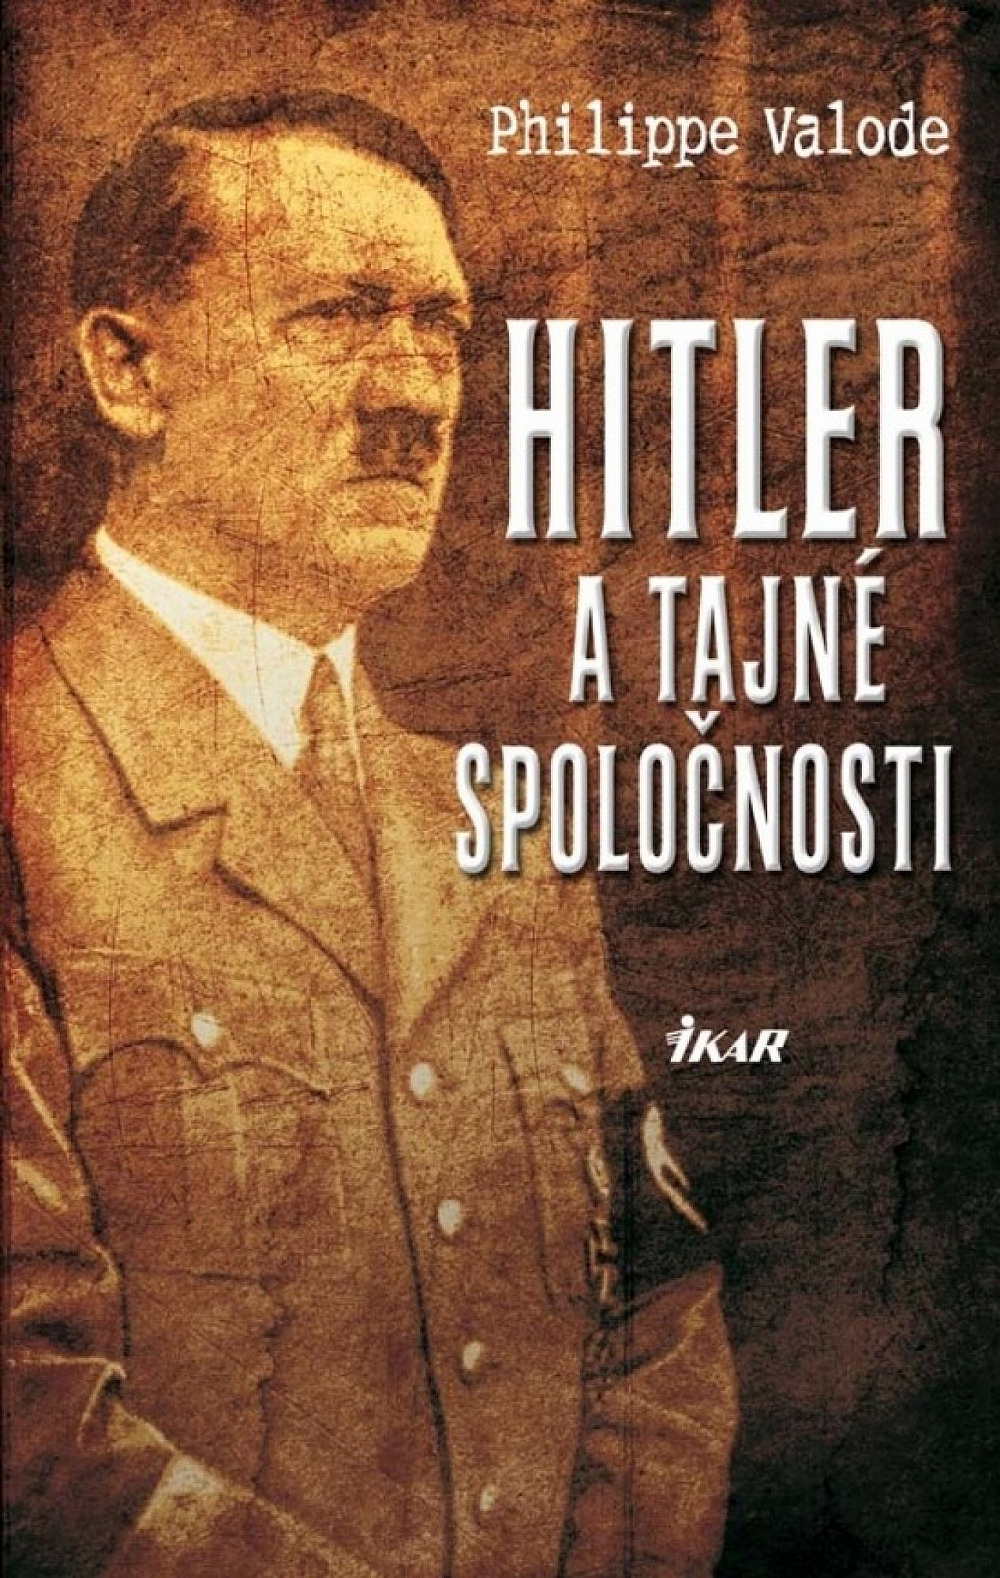 Hitler a tajné spoločnosti